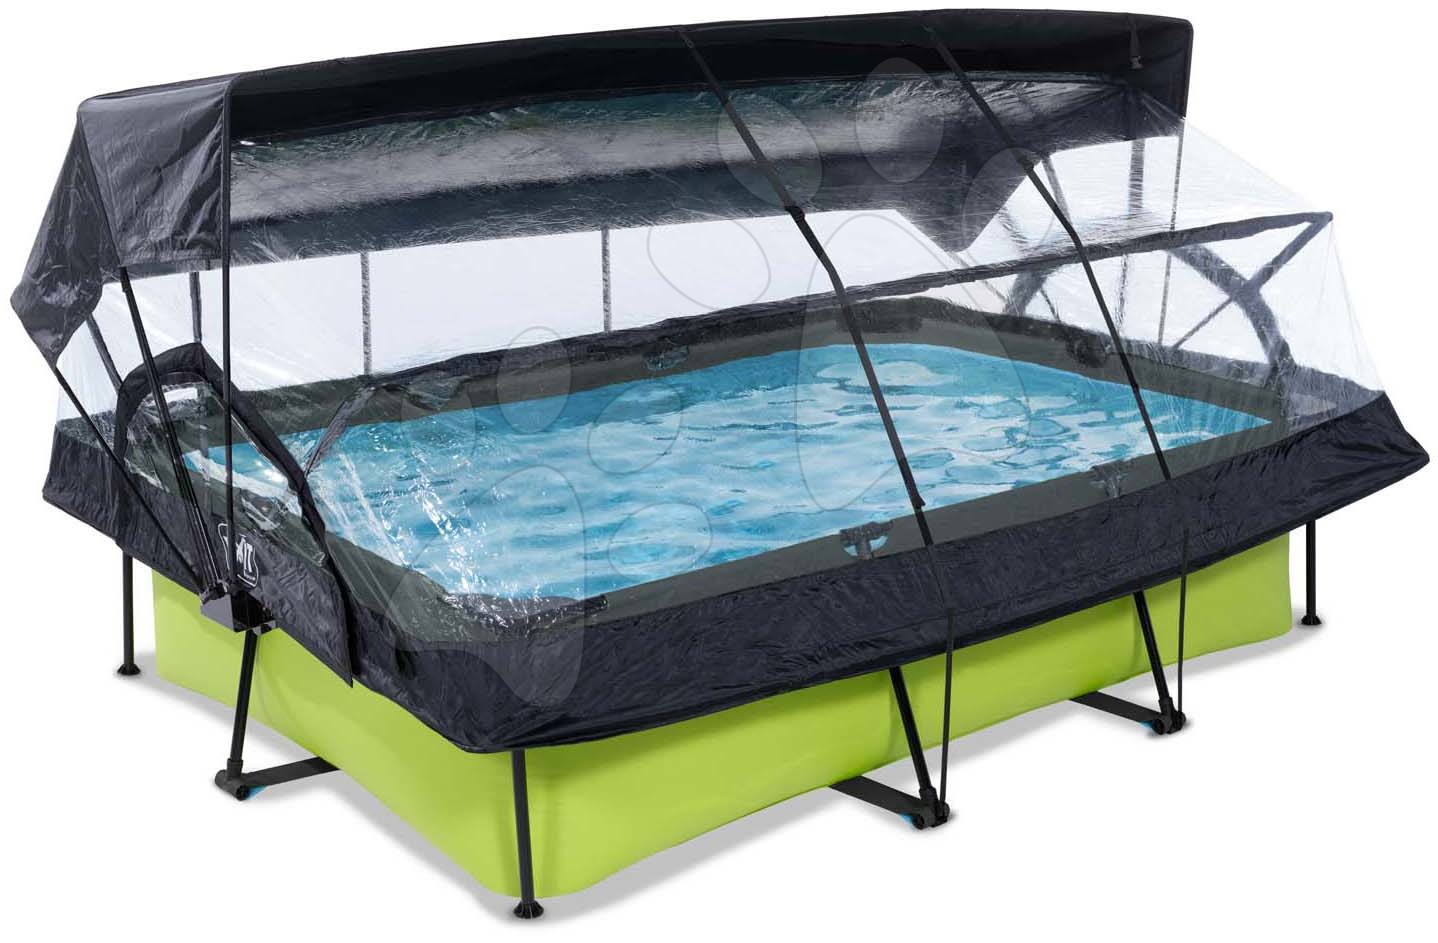 Bazén so strieškou krytom a filtráciou Lime pool Exit Toys oceľová konštrukcia 220*150*65 cm zelený od 6 rokov